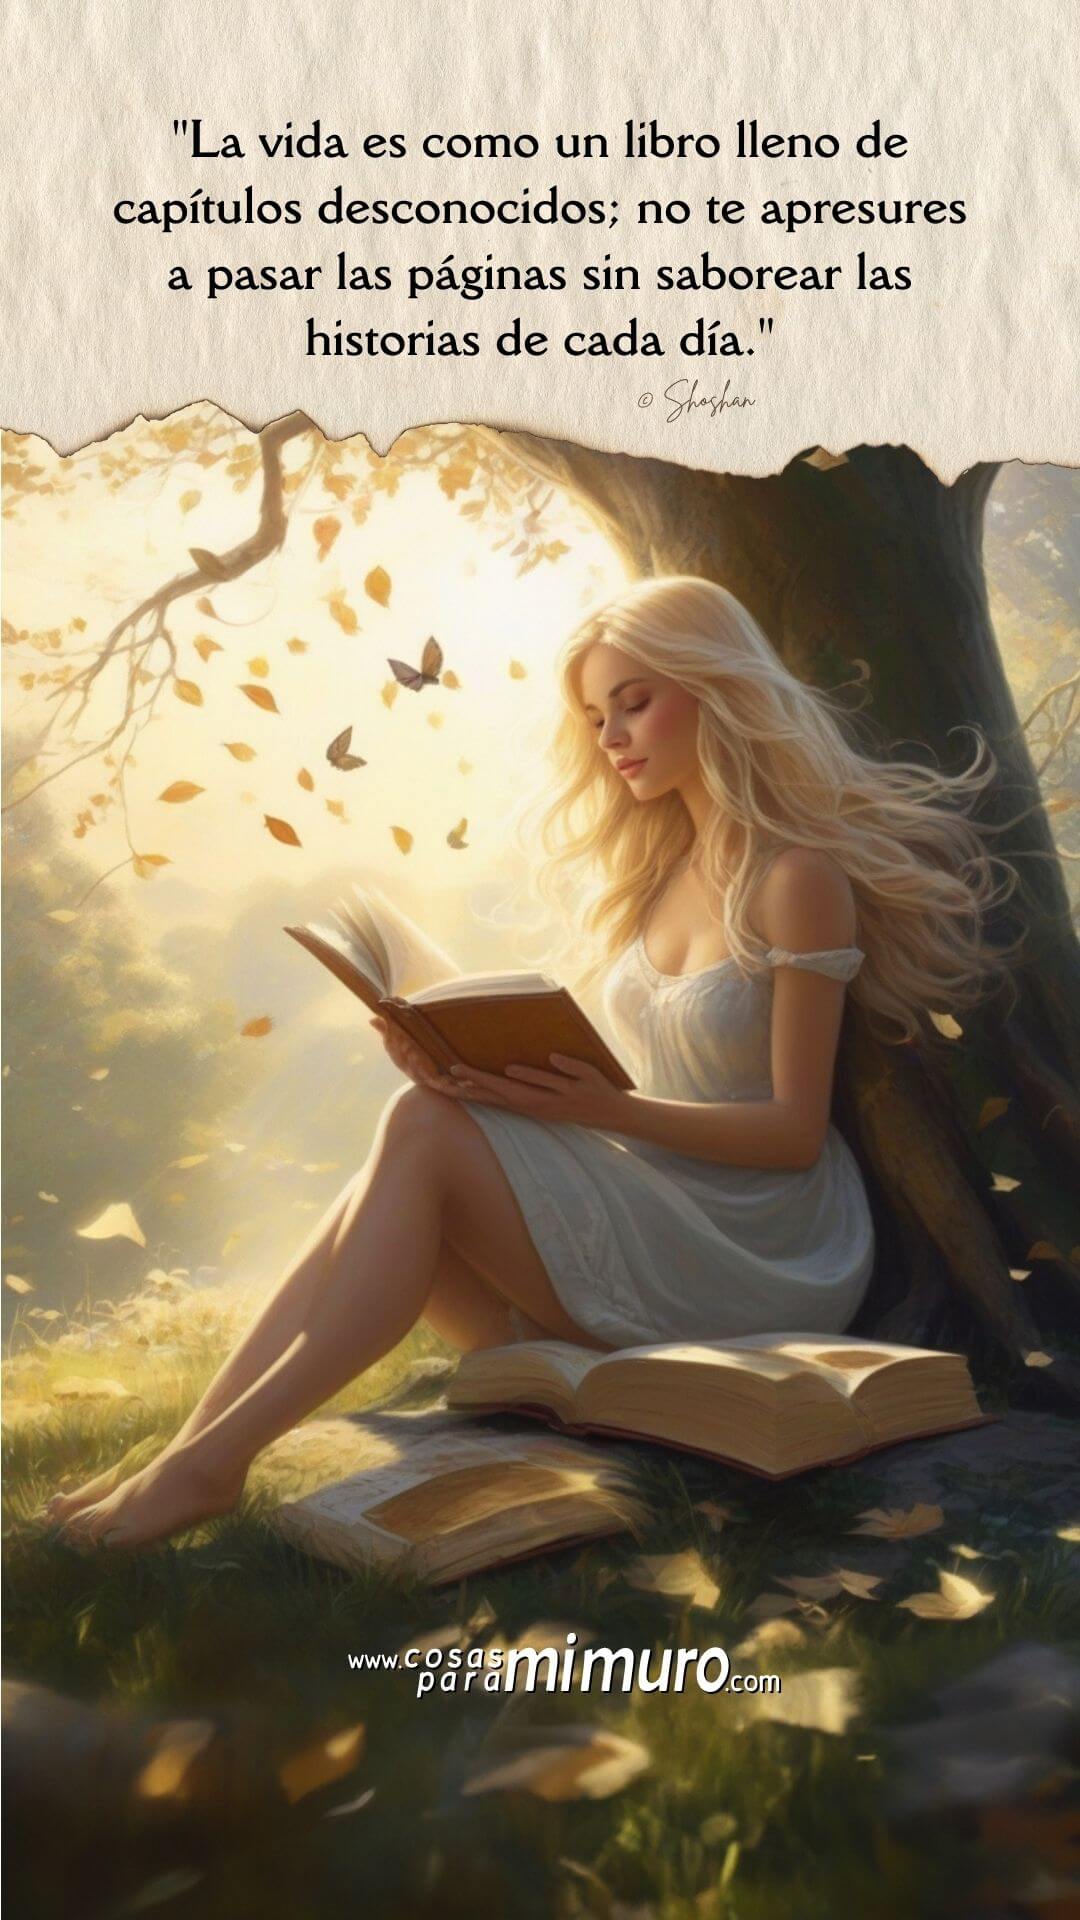 La vida es como un libro lleno de capítulos desconocidos; no te apresures a pasar las páginas sin saborear las historias de cada día